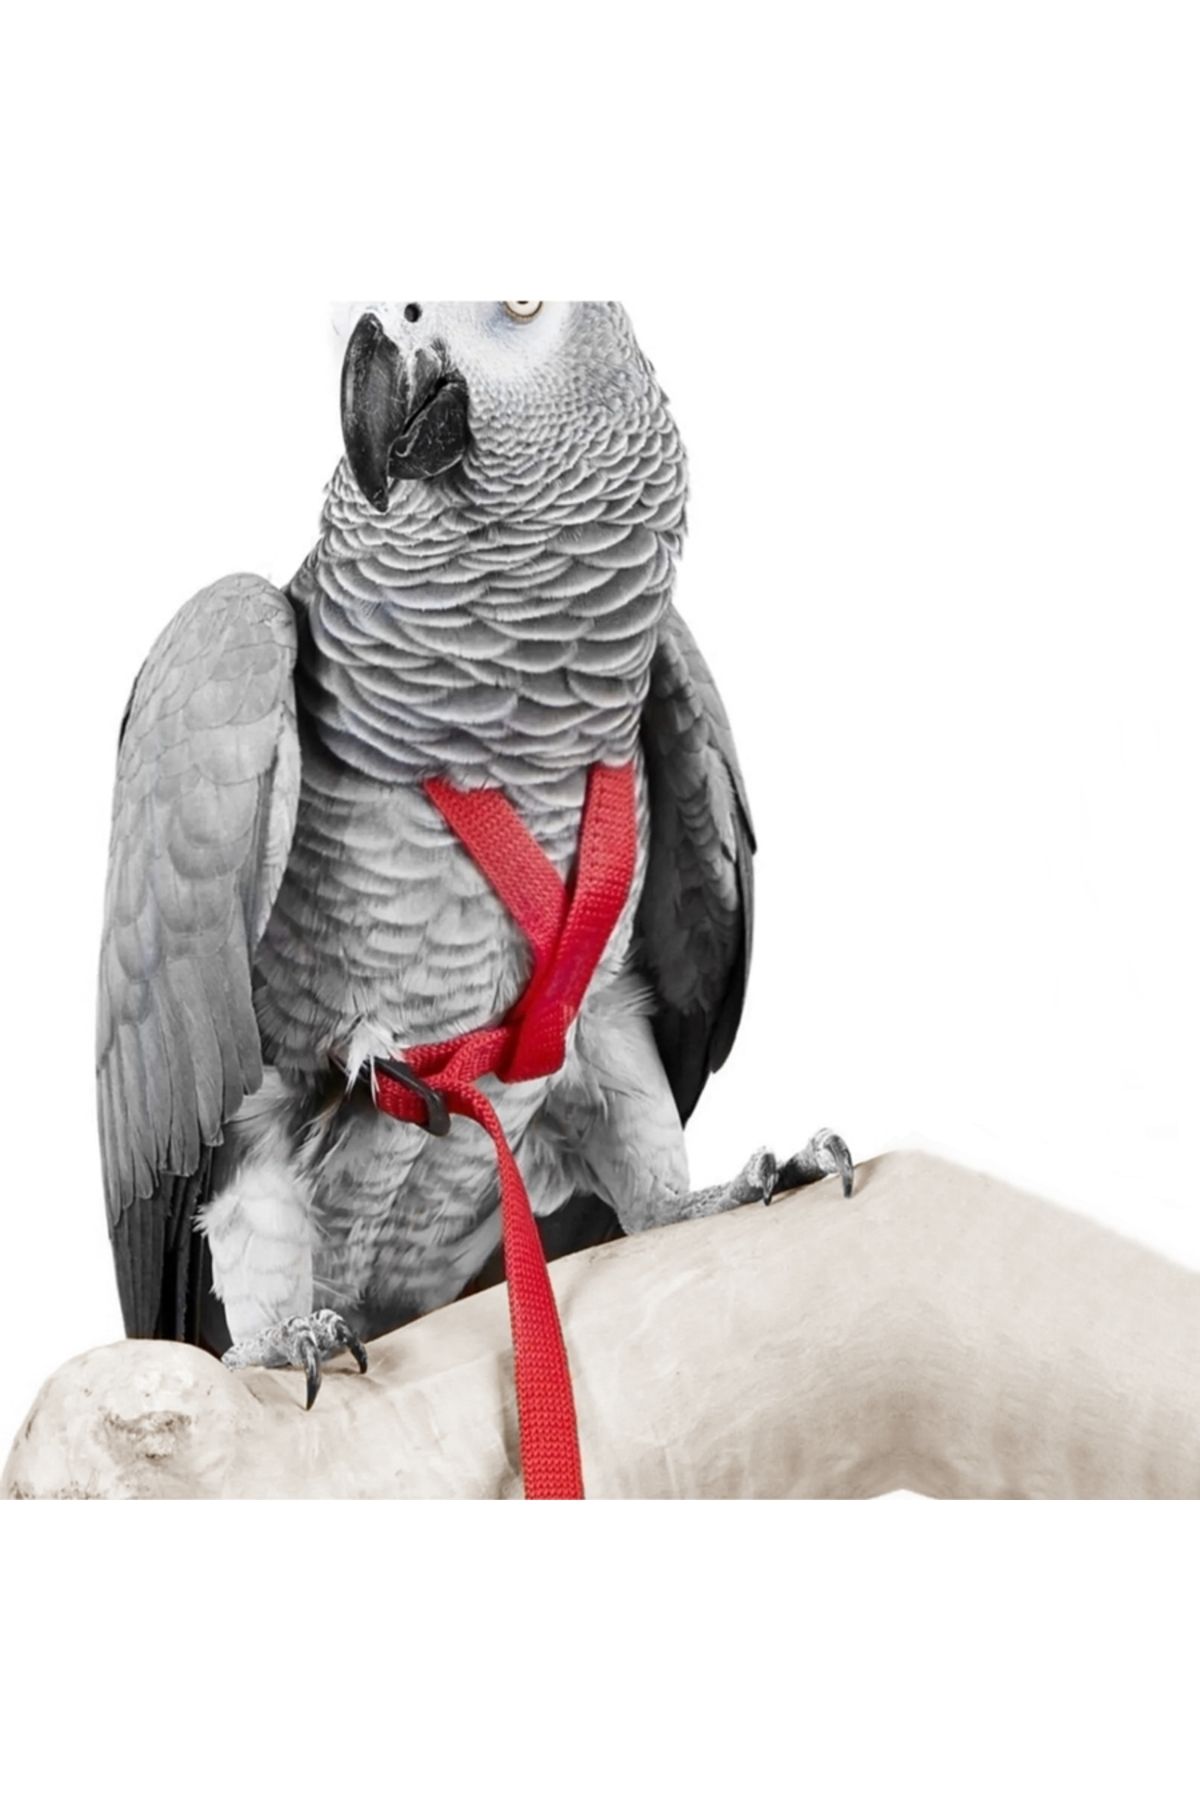 Markapet Gezdirme Kayışlı Kuş Göğüs Tasma Seti 90 cm Kırmızı